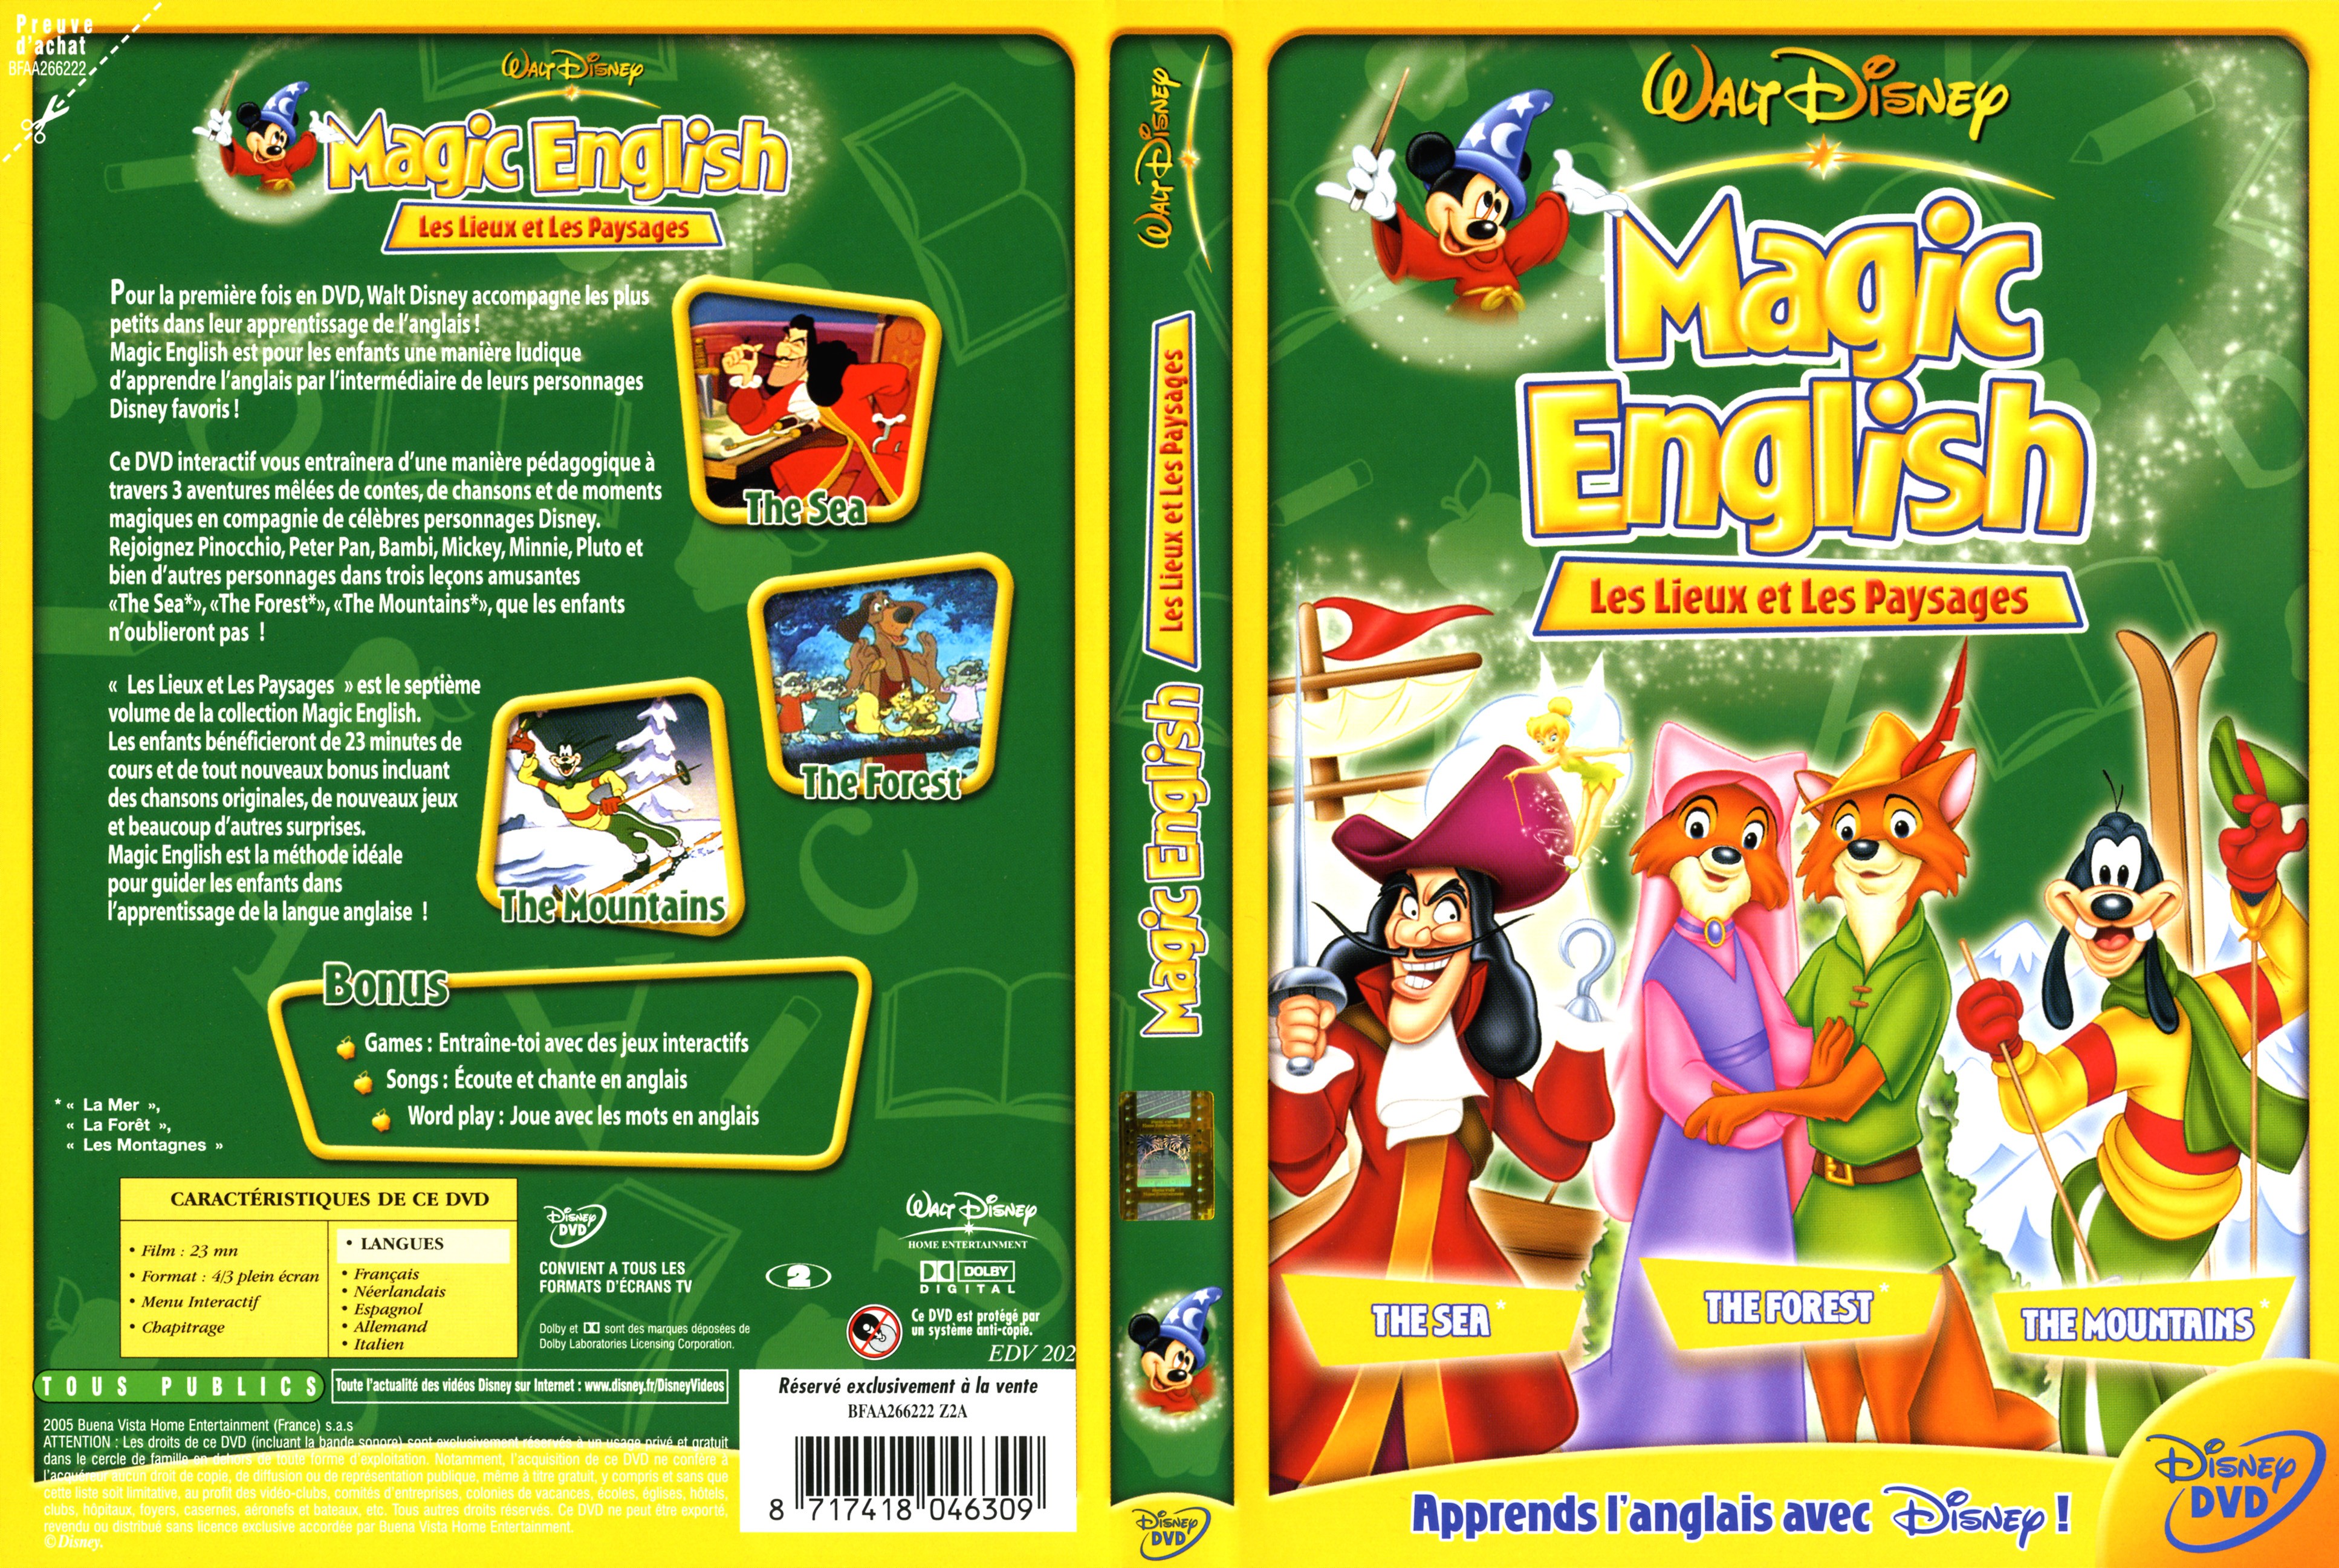 Jaquette DVD Magic english les lieux et les paysages